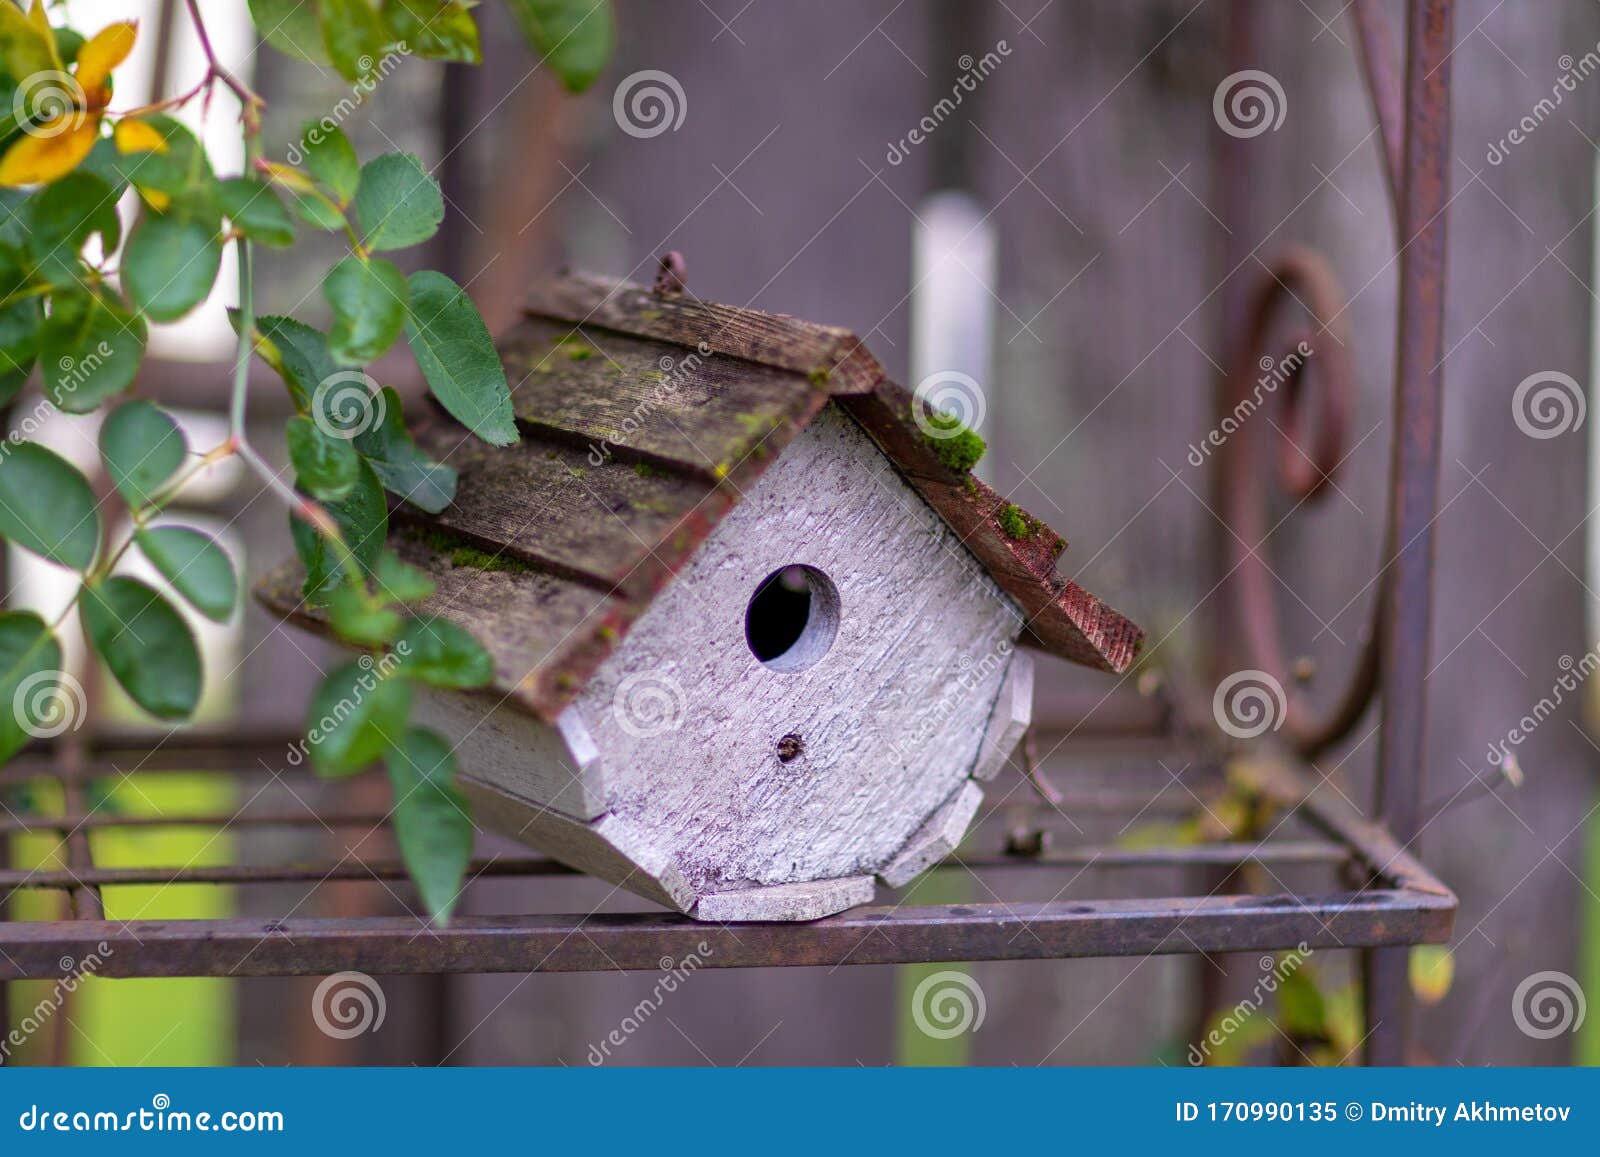 Casa De Pájaros De Madera En Una Estantería Rústica De Metal Imagen de  archivo - Imagen de vida, exterior: 170990135